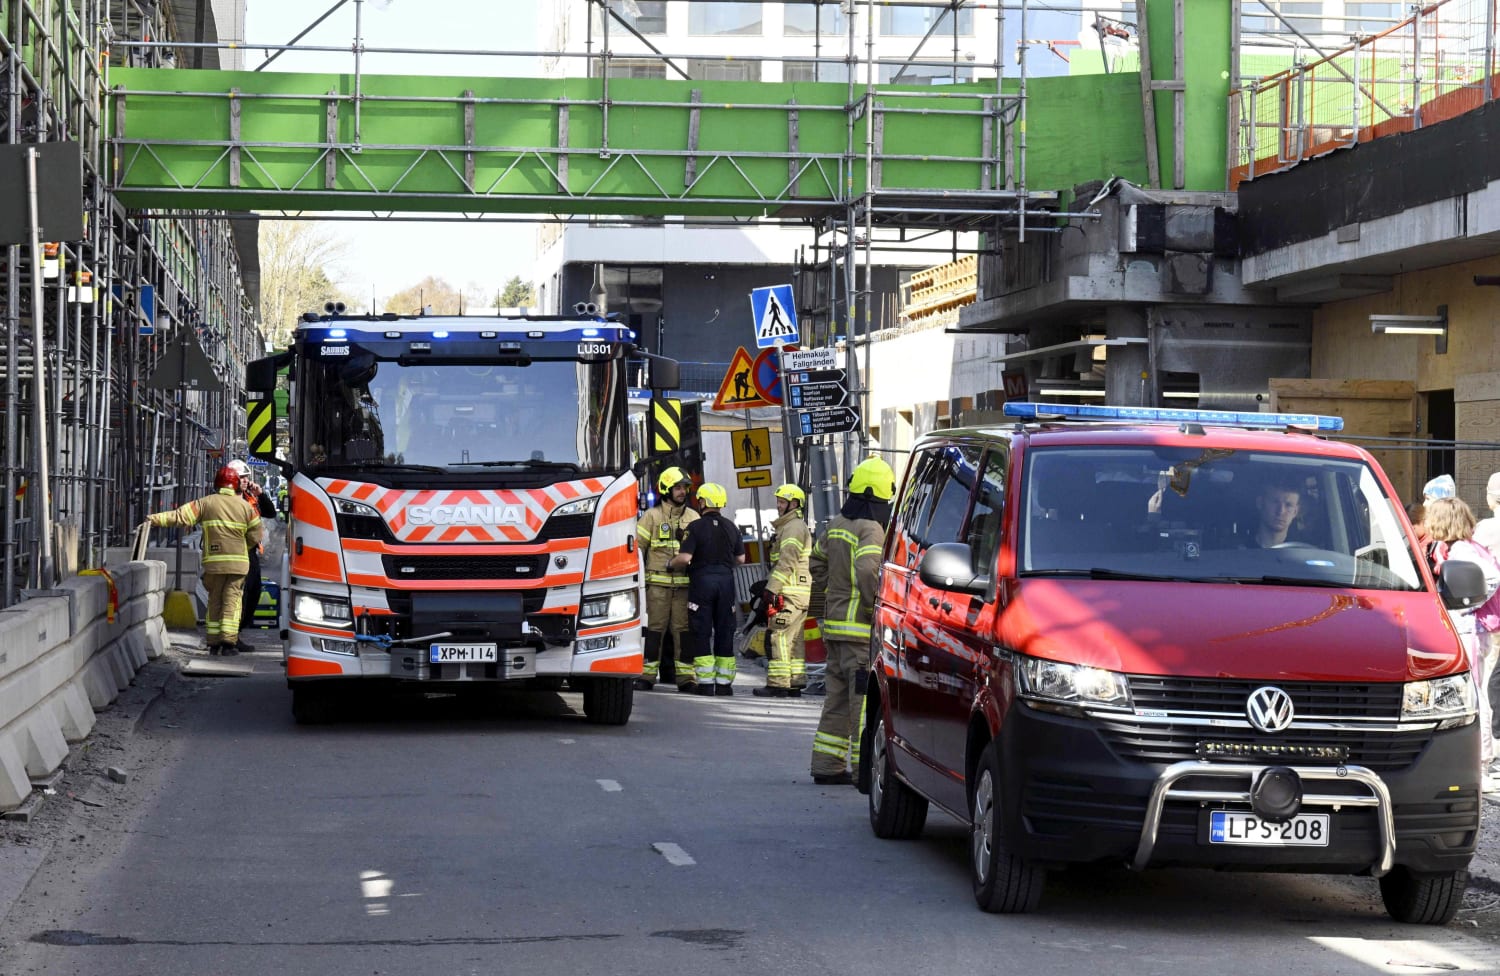 Around 24 injured in Finland bridge collapse, many of them children